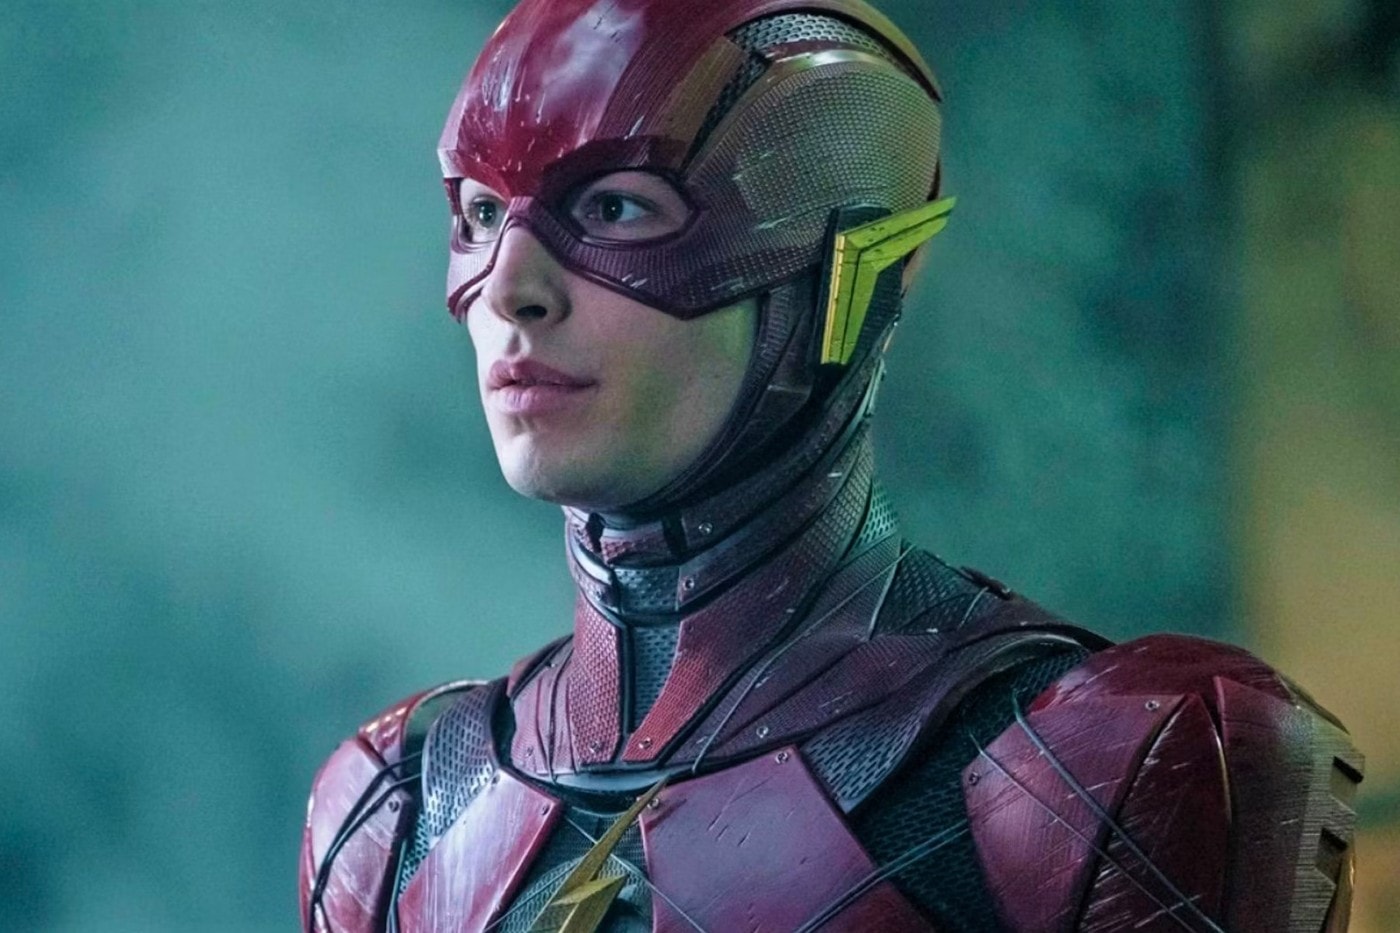 消息称《闪电侠 The Flash》将删去 Henry Cavill 和 Gal Gadot 客串片段